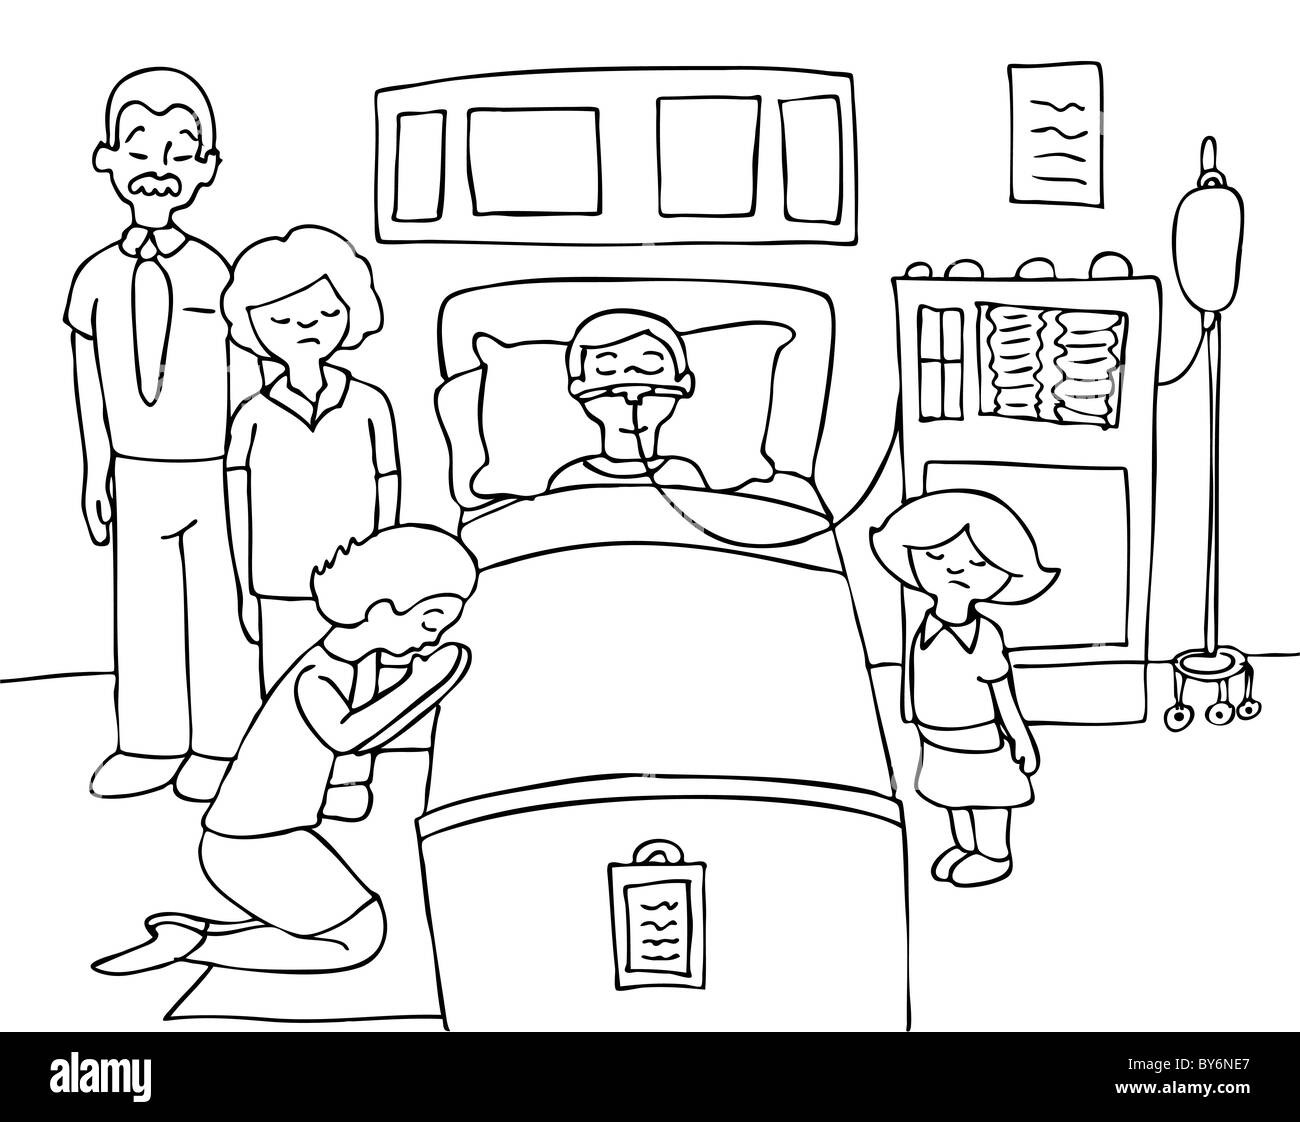 L'enfant malade se trouve dans un lit d'hôpital avec sa famille prier pour son rétablissement - noir et blanc Banque D'Images